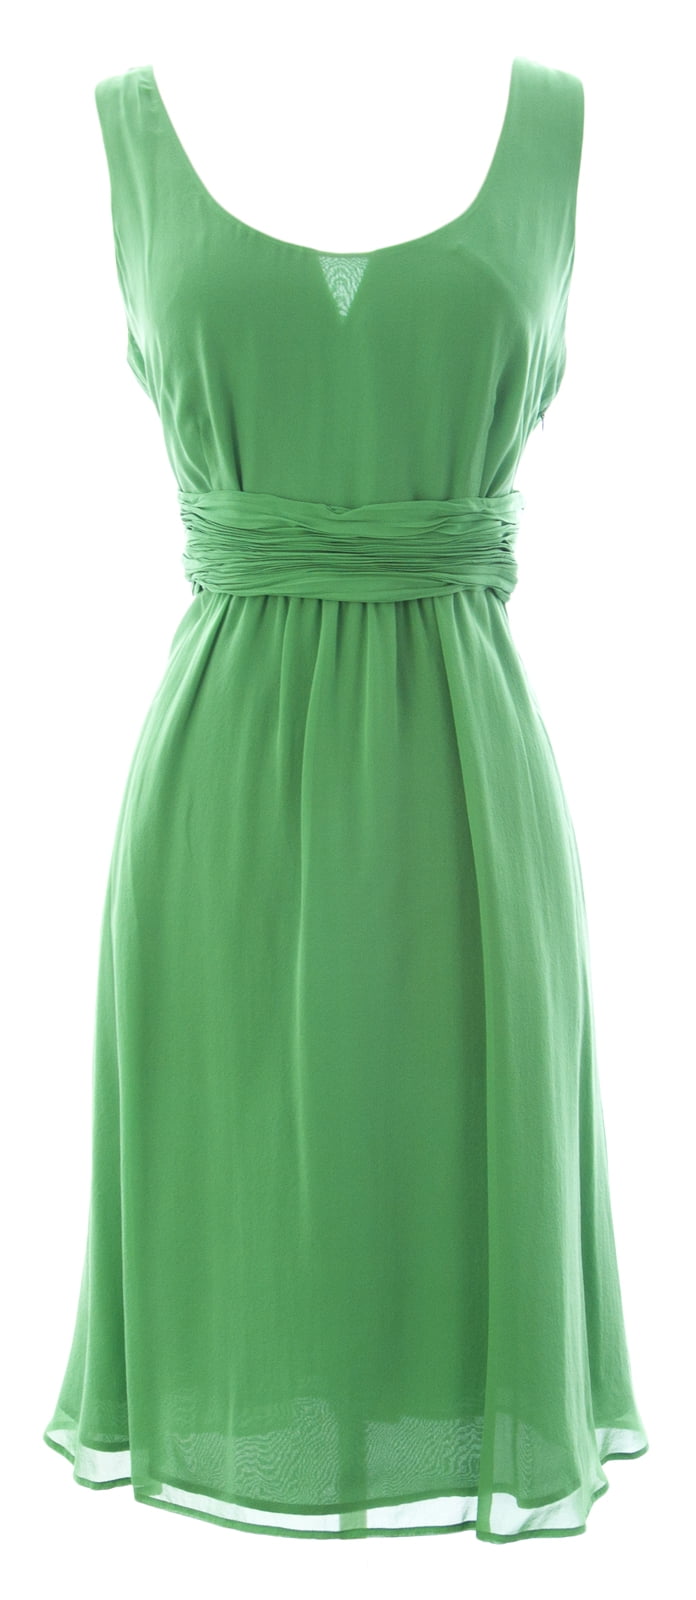 BODEN Women's Perfect Silk Dress US Sz 10 Lime Green - Walmart.com